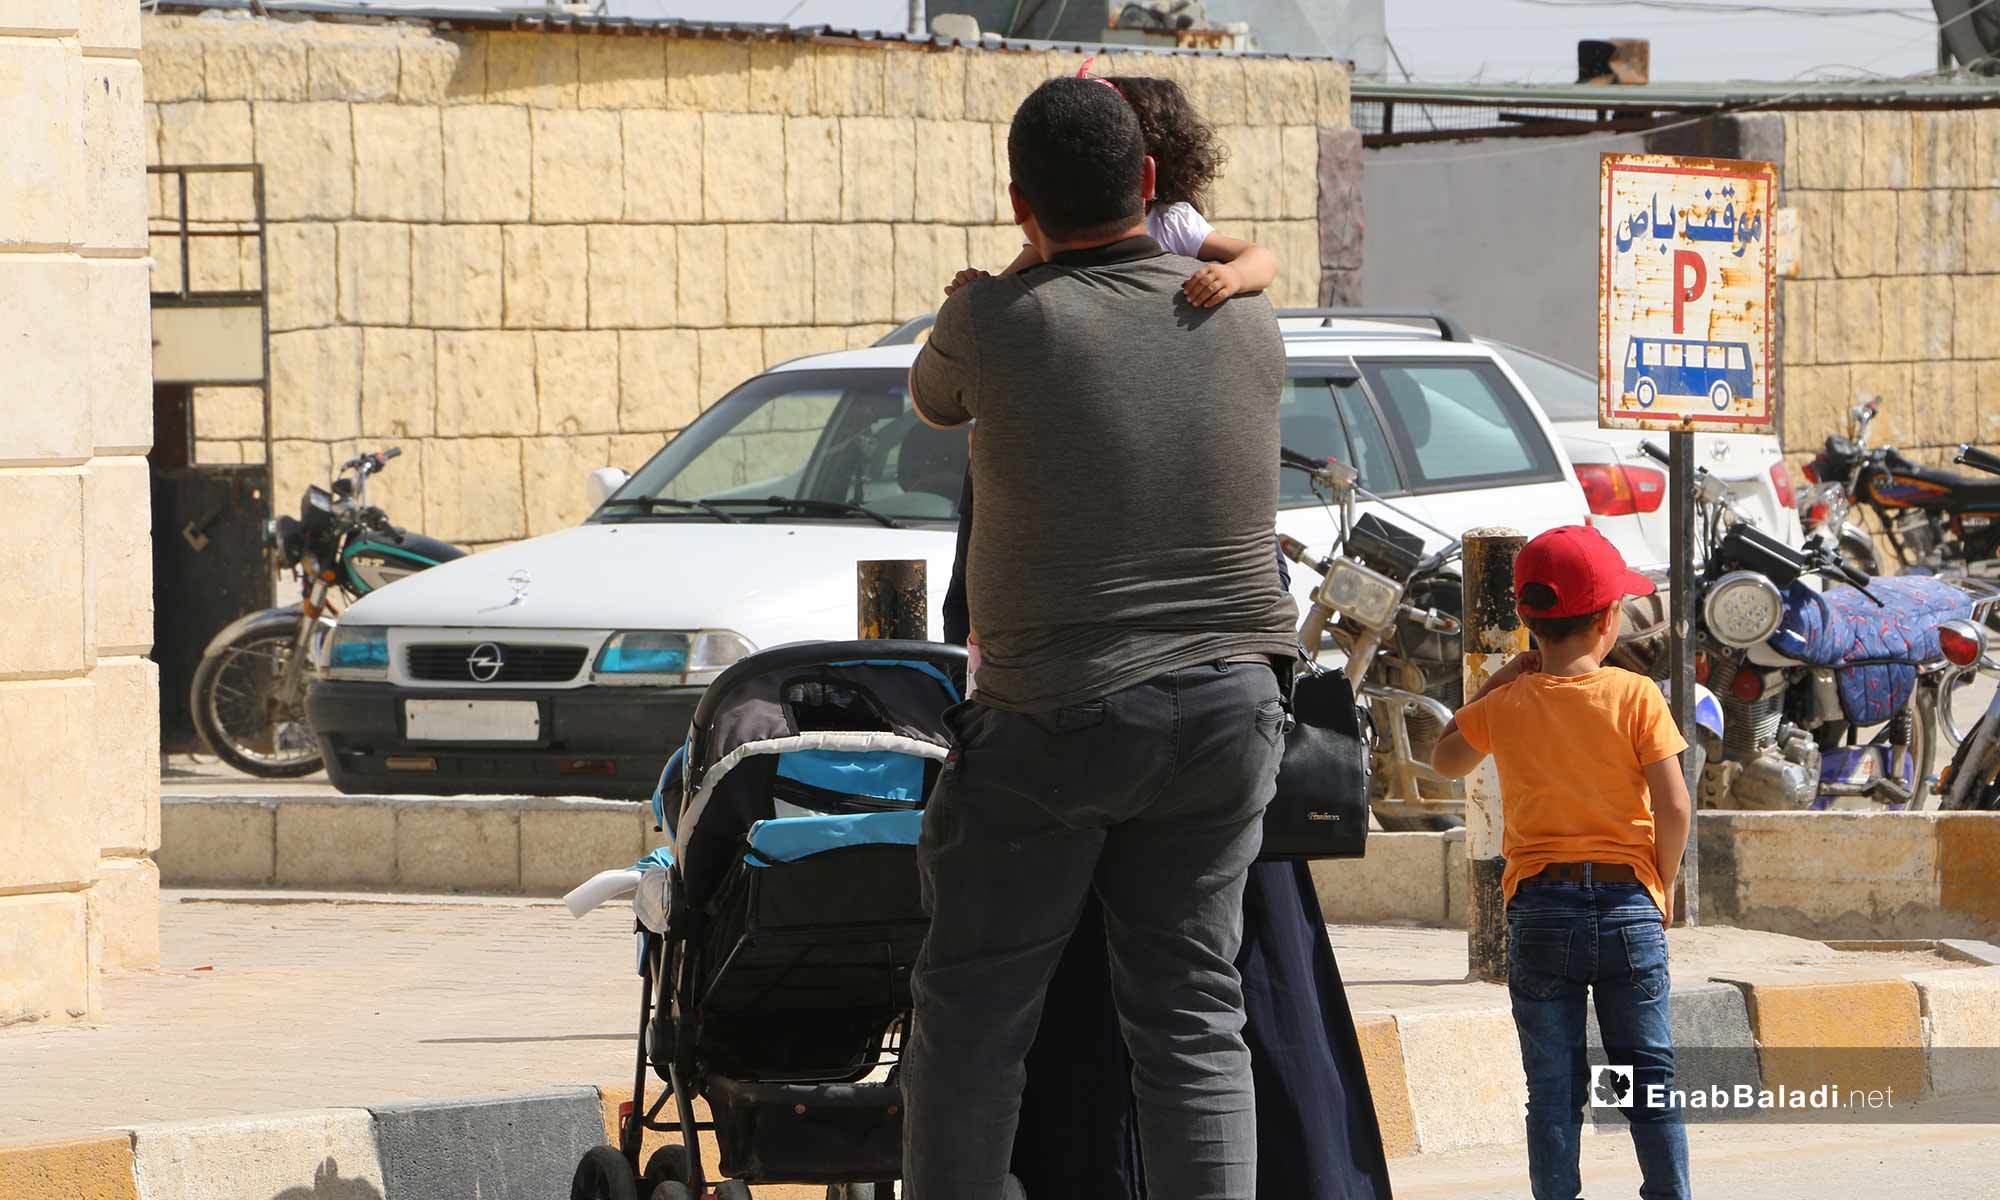 توافد السوريين من تركيا لقضاء إجازة العيد في سوريا عبر معبر باب السلامة الحدودي - 21 من أيار 2019 (عنب بلدي)